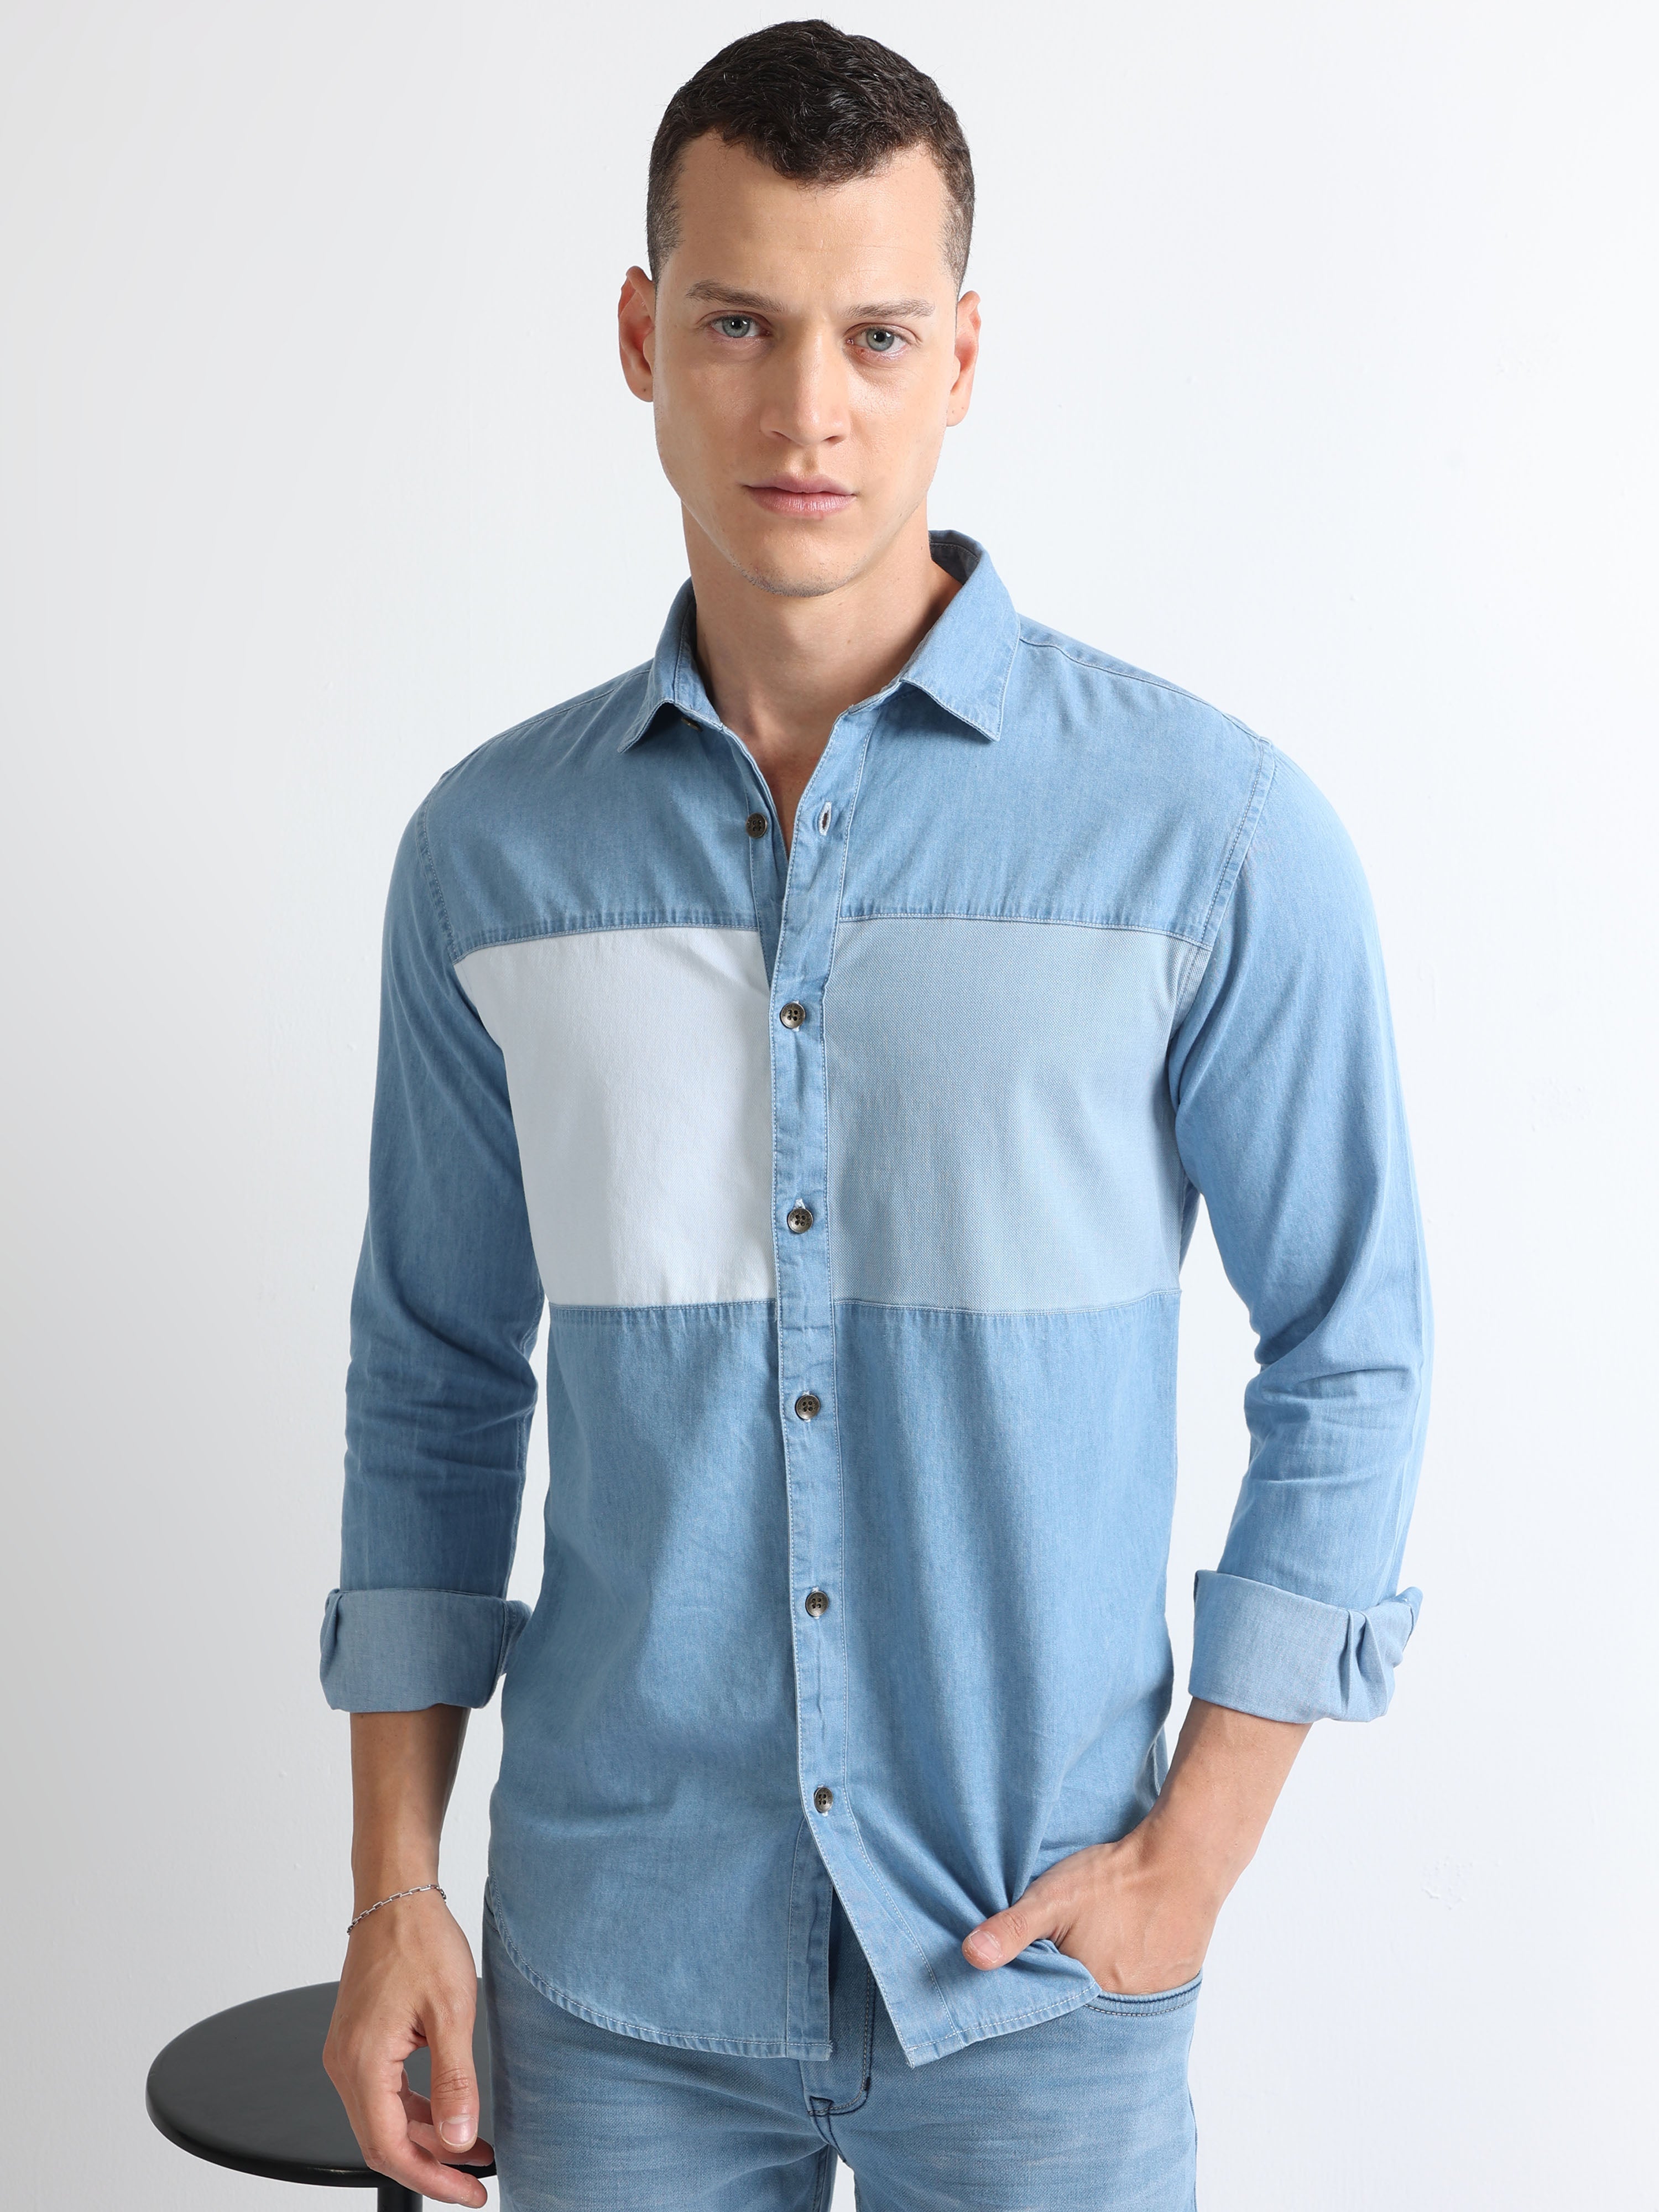 ESPRIT - Cotton denim shirt at our online shop